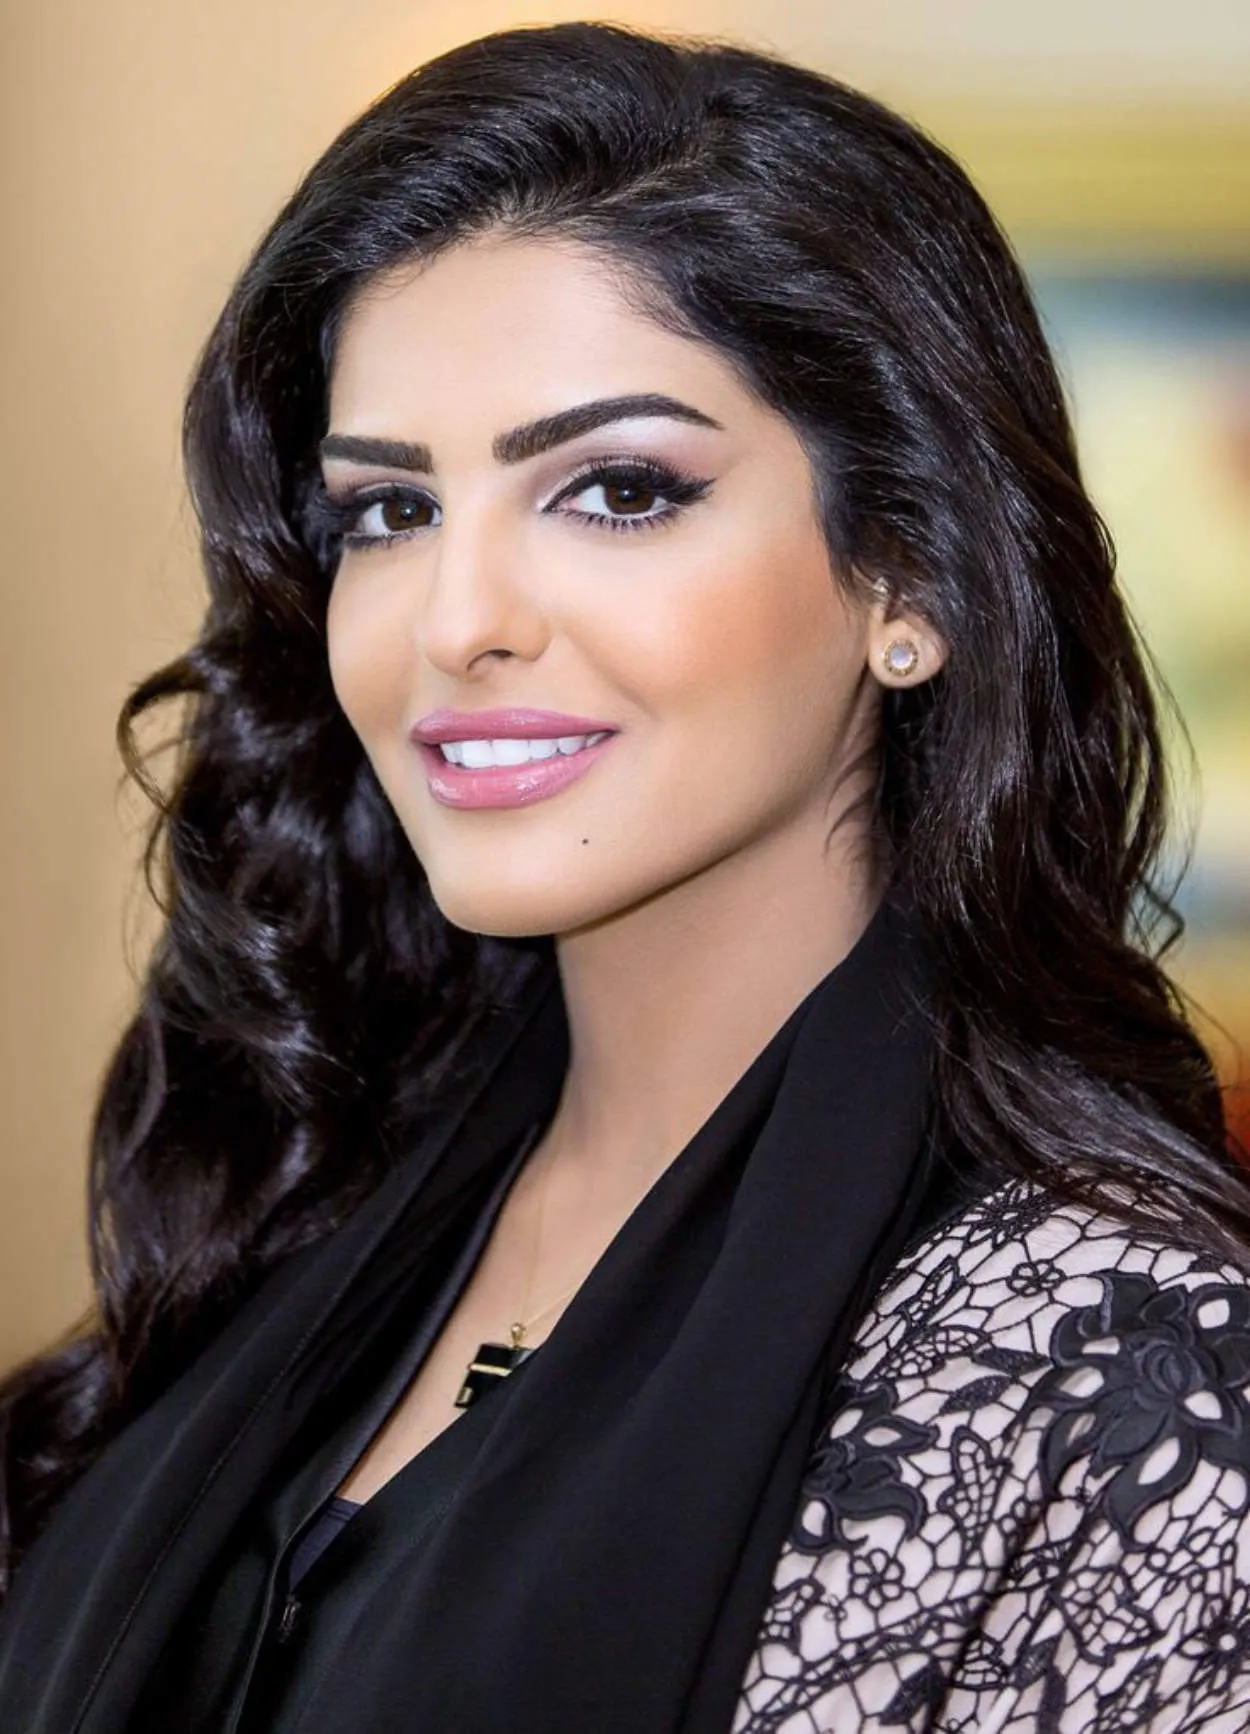 Ta'if (Arab Saudi) beautiful woman or selebgram